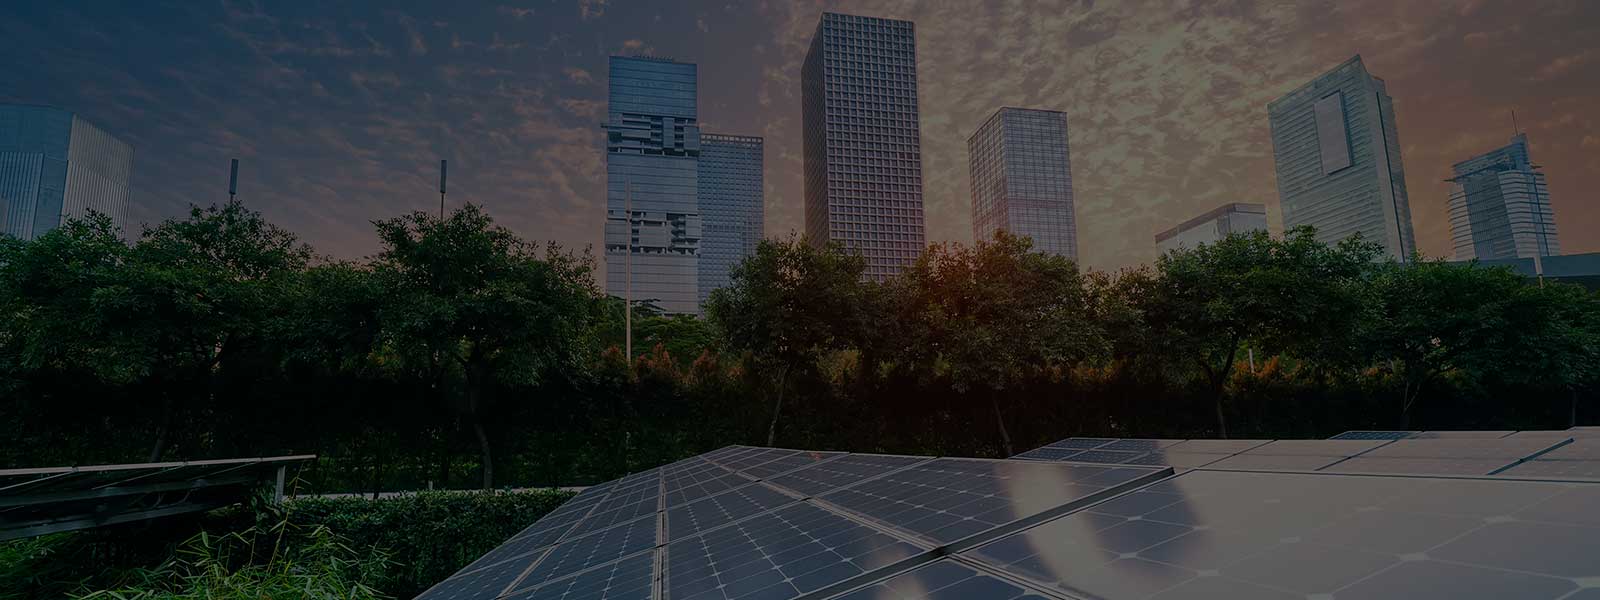 Panneaux solaires et immeubles de bureaux avec un coucher de soleil en arrière plan